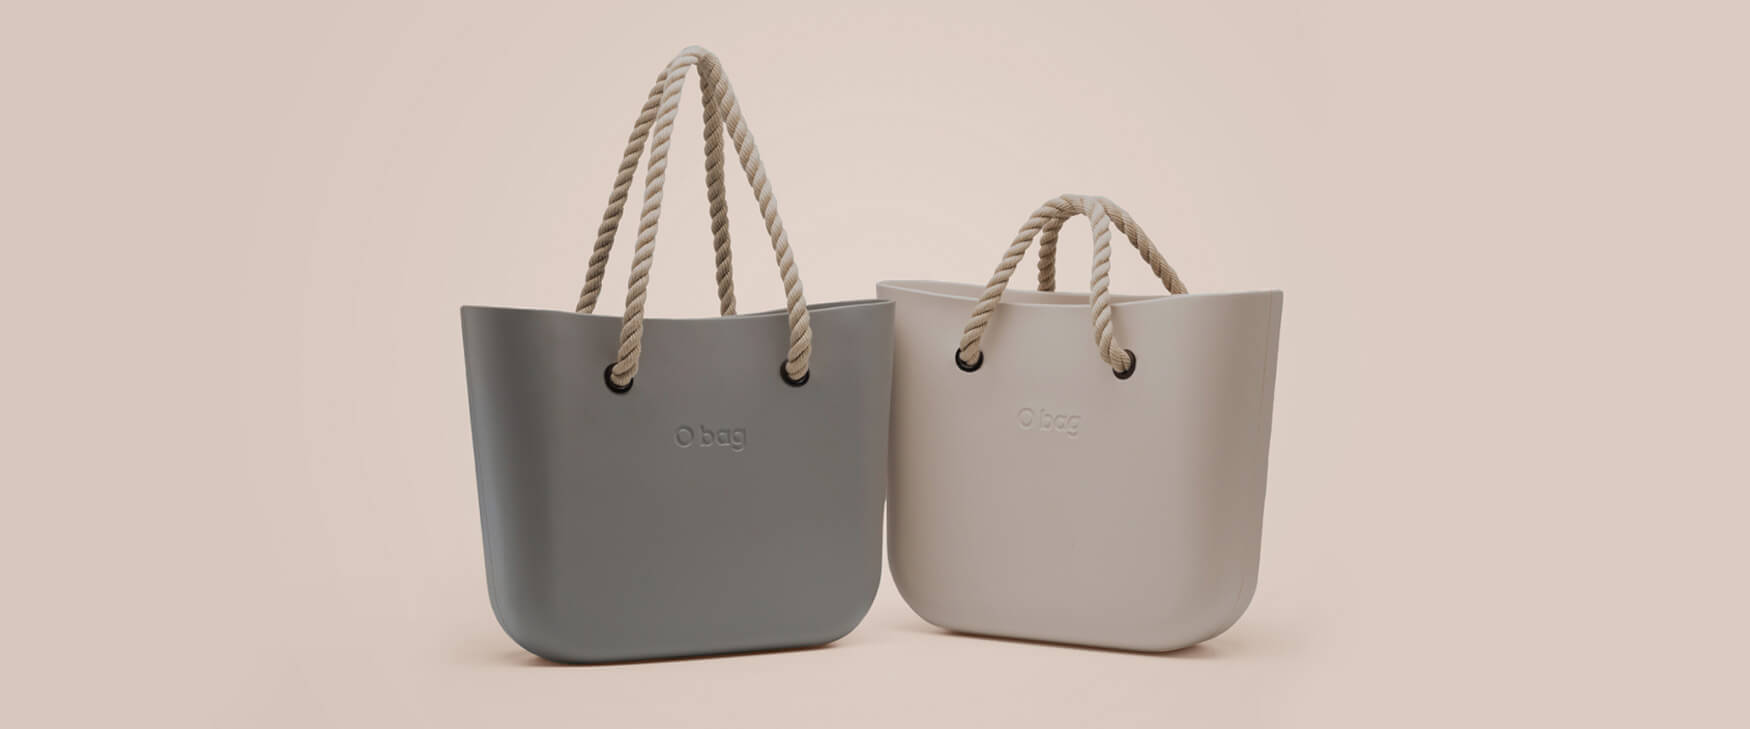 O bag – A táska, amit te tervezel!